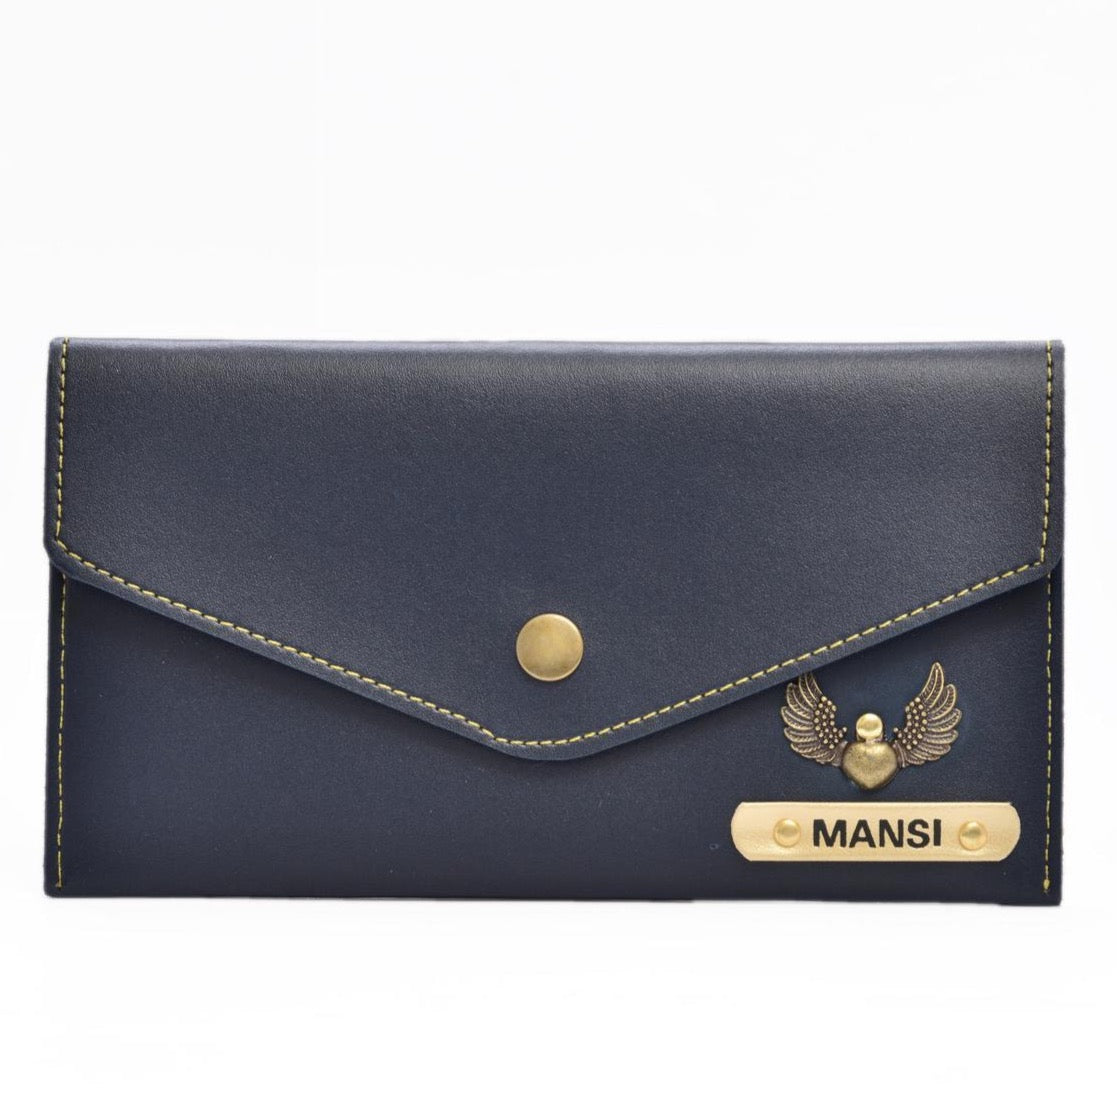 Vintage Burgundy Leather Envelope Clutch Purse Handbag Korea | eBay